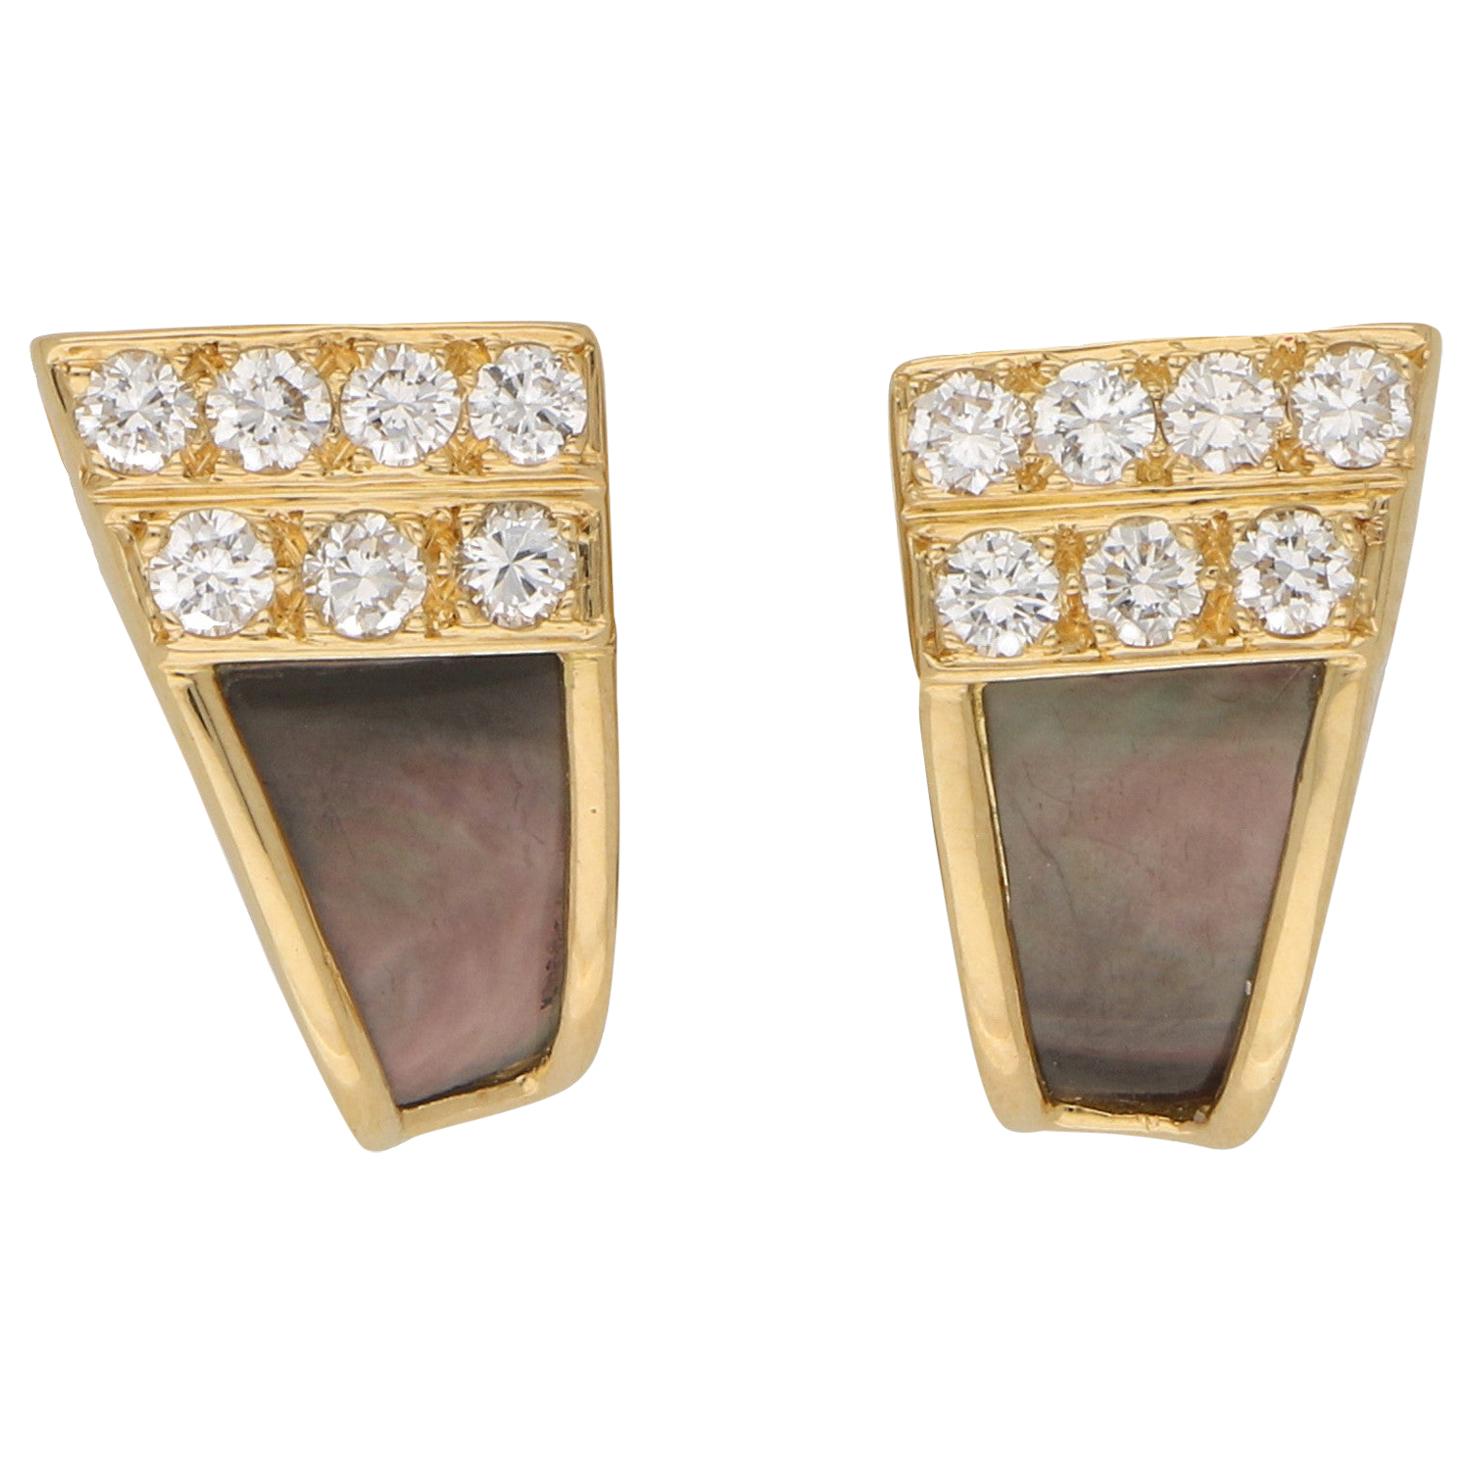 Van Cleef & Arpels Black Mother of Pearl and Diamond Studs Earrings in 18 Karat